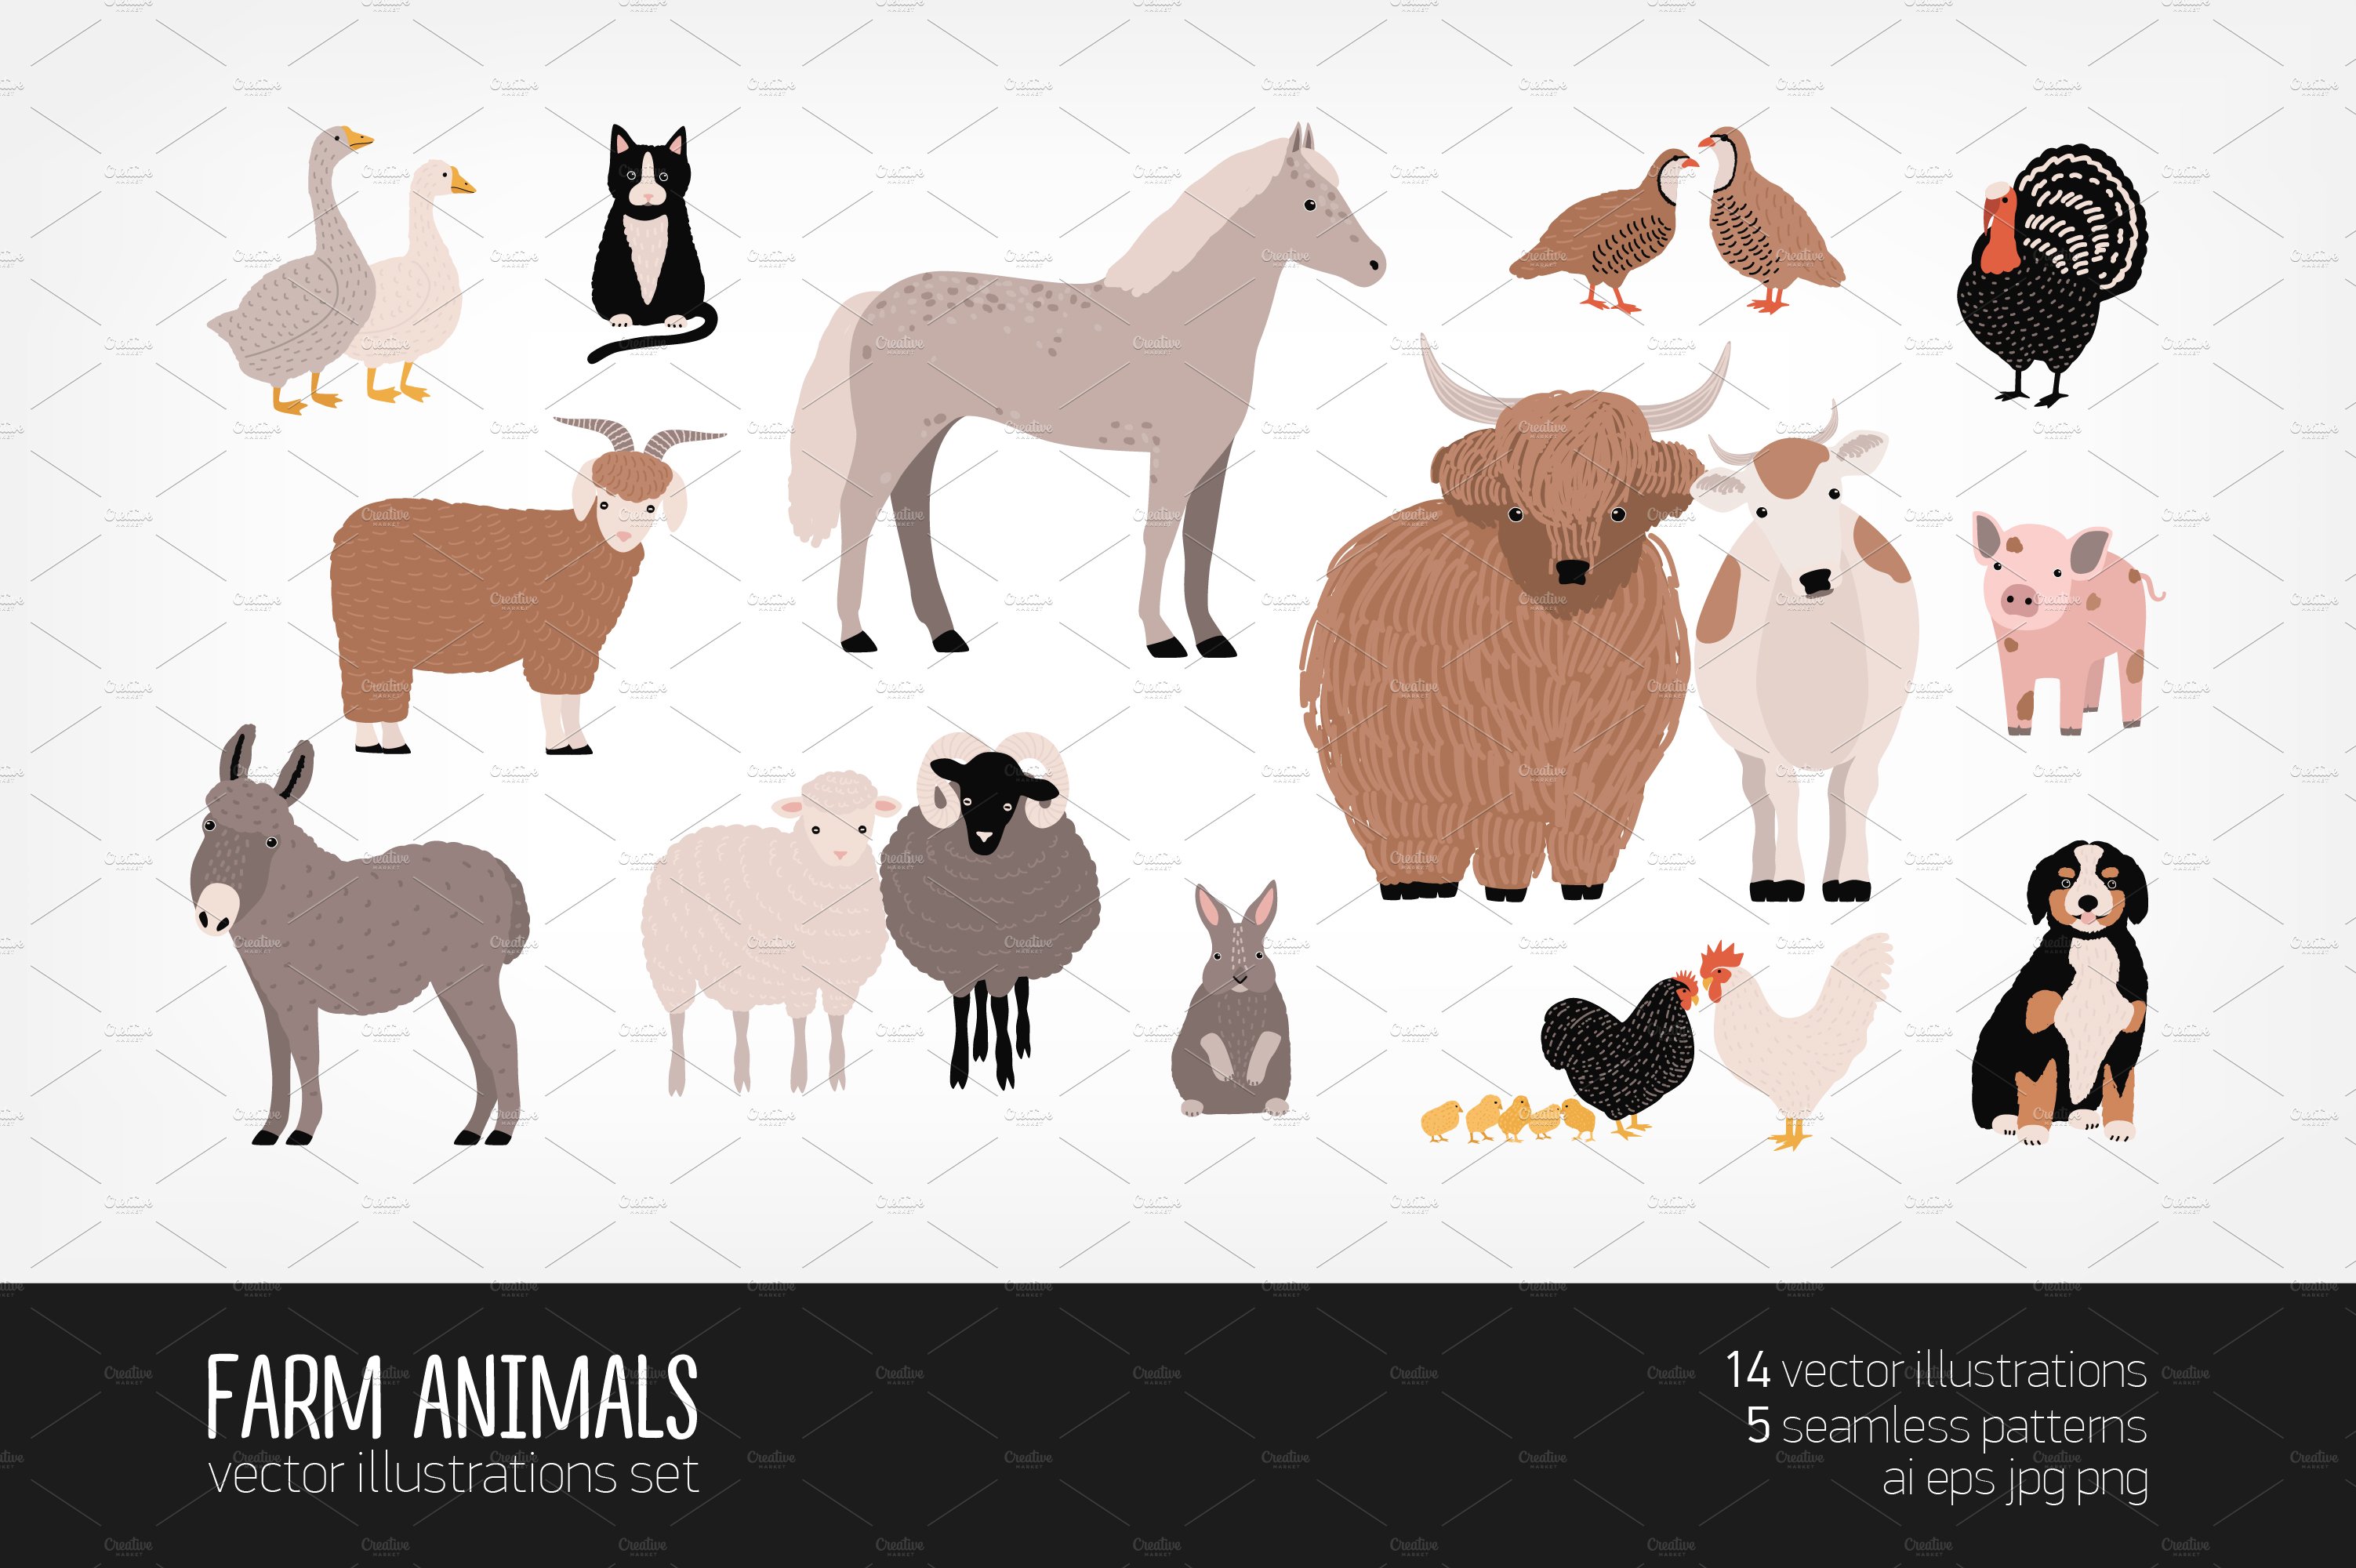 Domestic farm animals cover image.